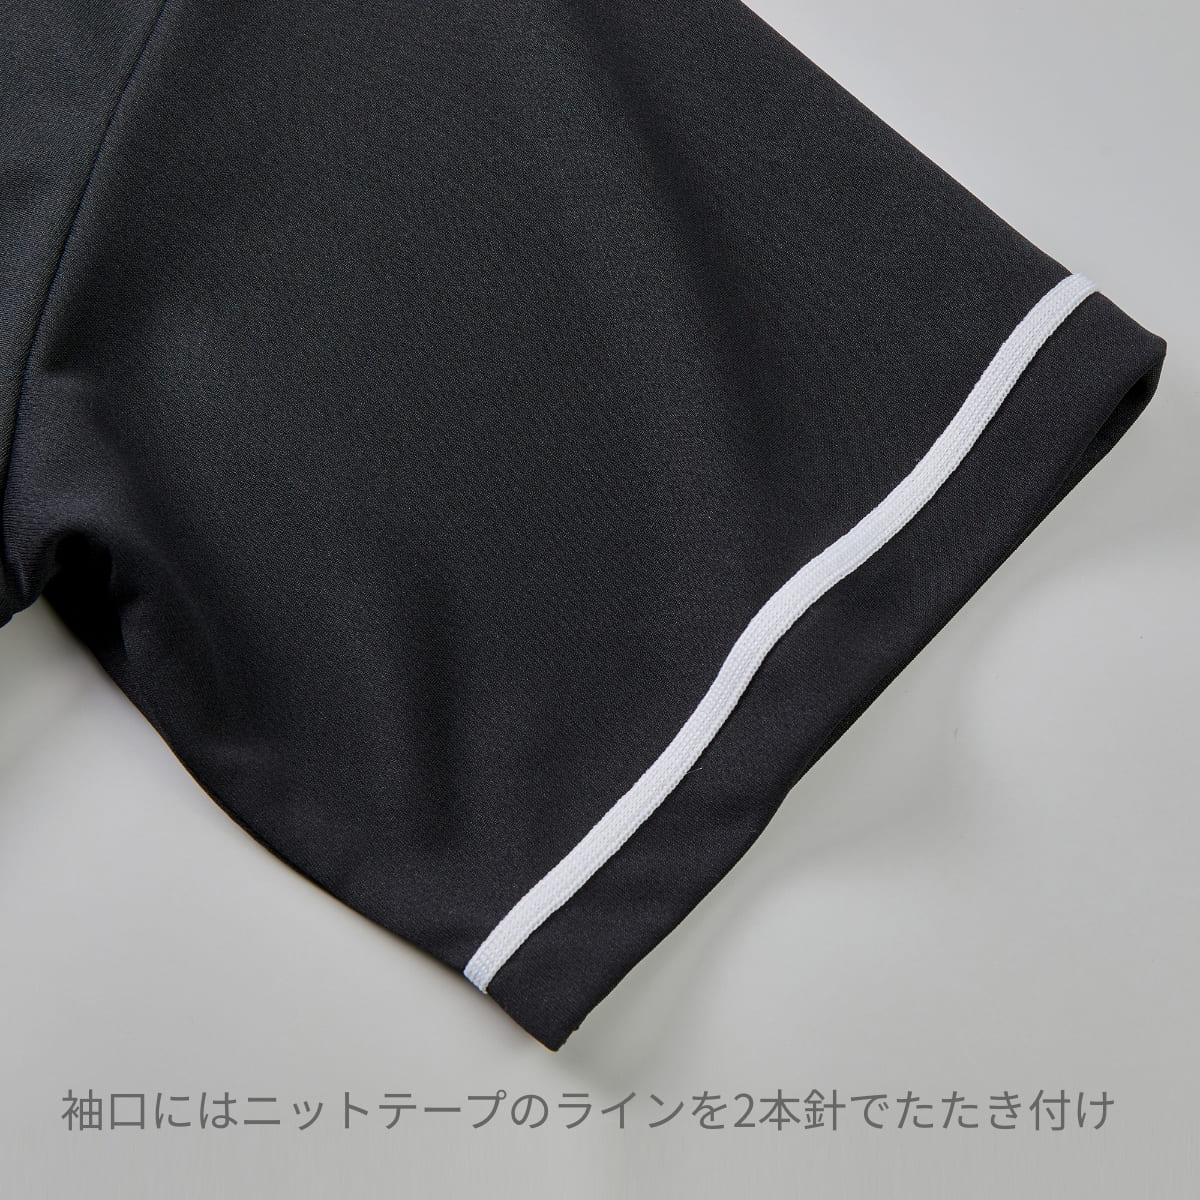 4.1オンス ドライアスレチック ベースボールシャツ | ビッグサイズ | 1枚 | 5982-01 | レッド/ブラック